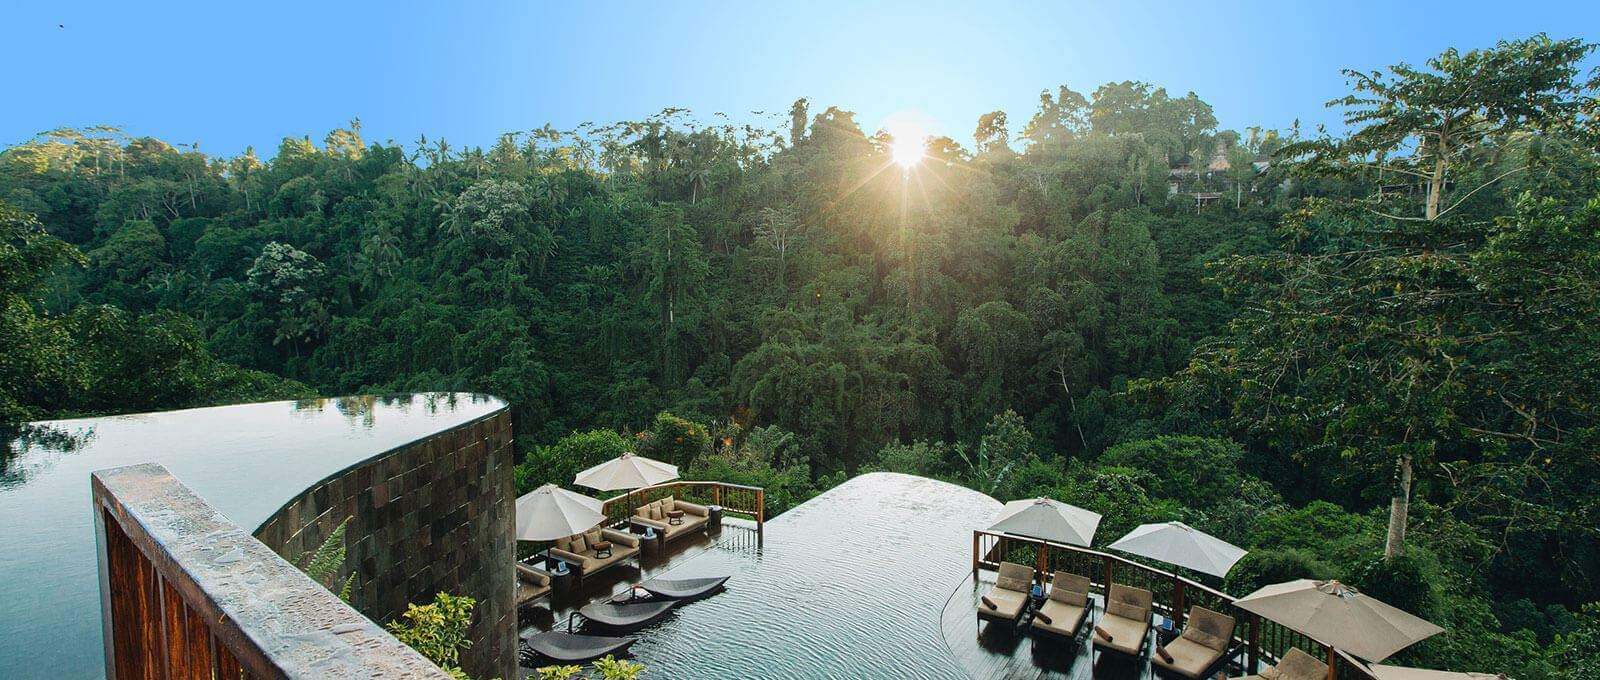 Blog - Top Activities At Hanging Gardens Of Bali: Bali Luxury Ubud Resort